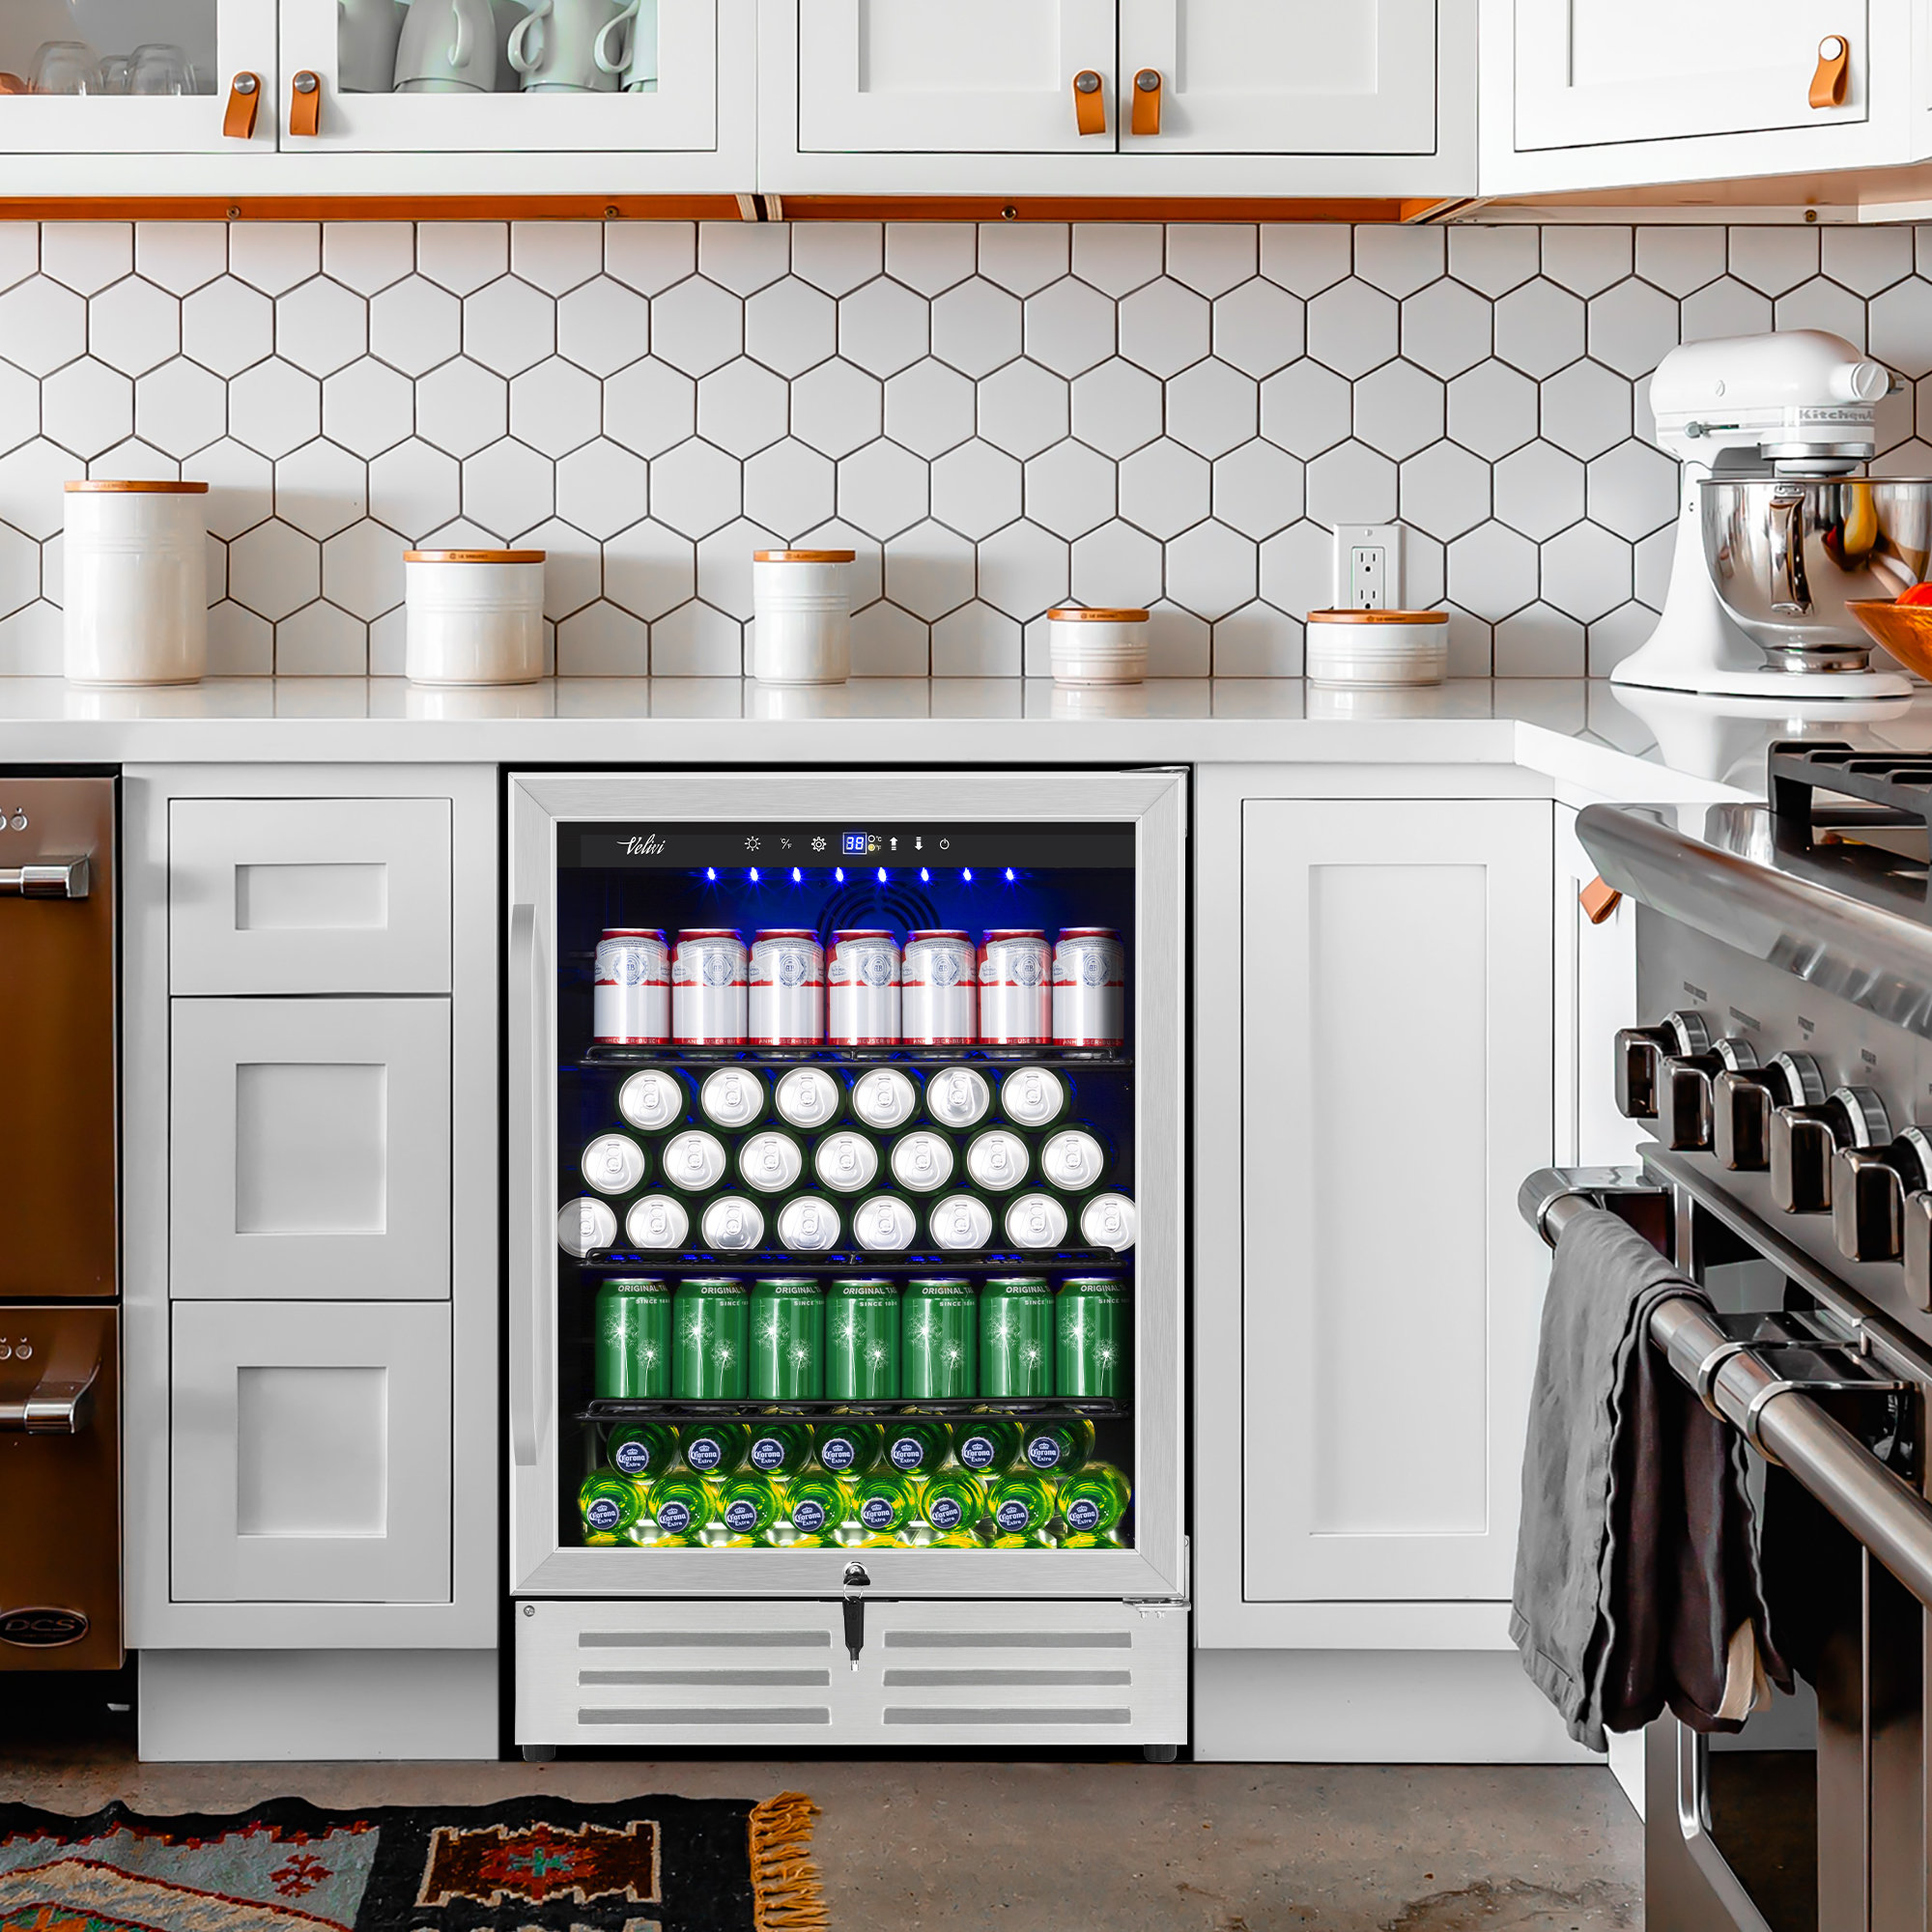 https://assets.wfcdn.com/im/10018201/compr-r85/2468/246820825/velivi-24-built-in-or-freestanding-210-cans-12-oz-beverage-refrigerator-with-glass-door.jpg